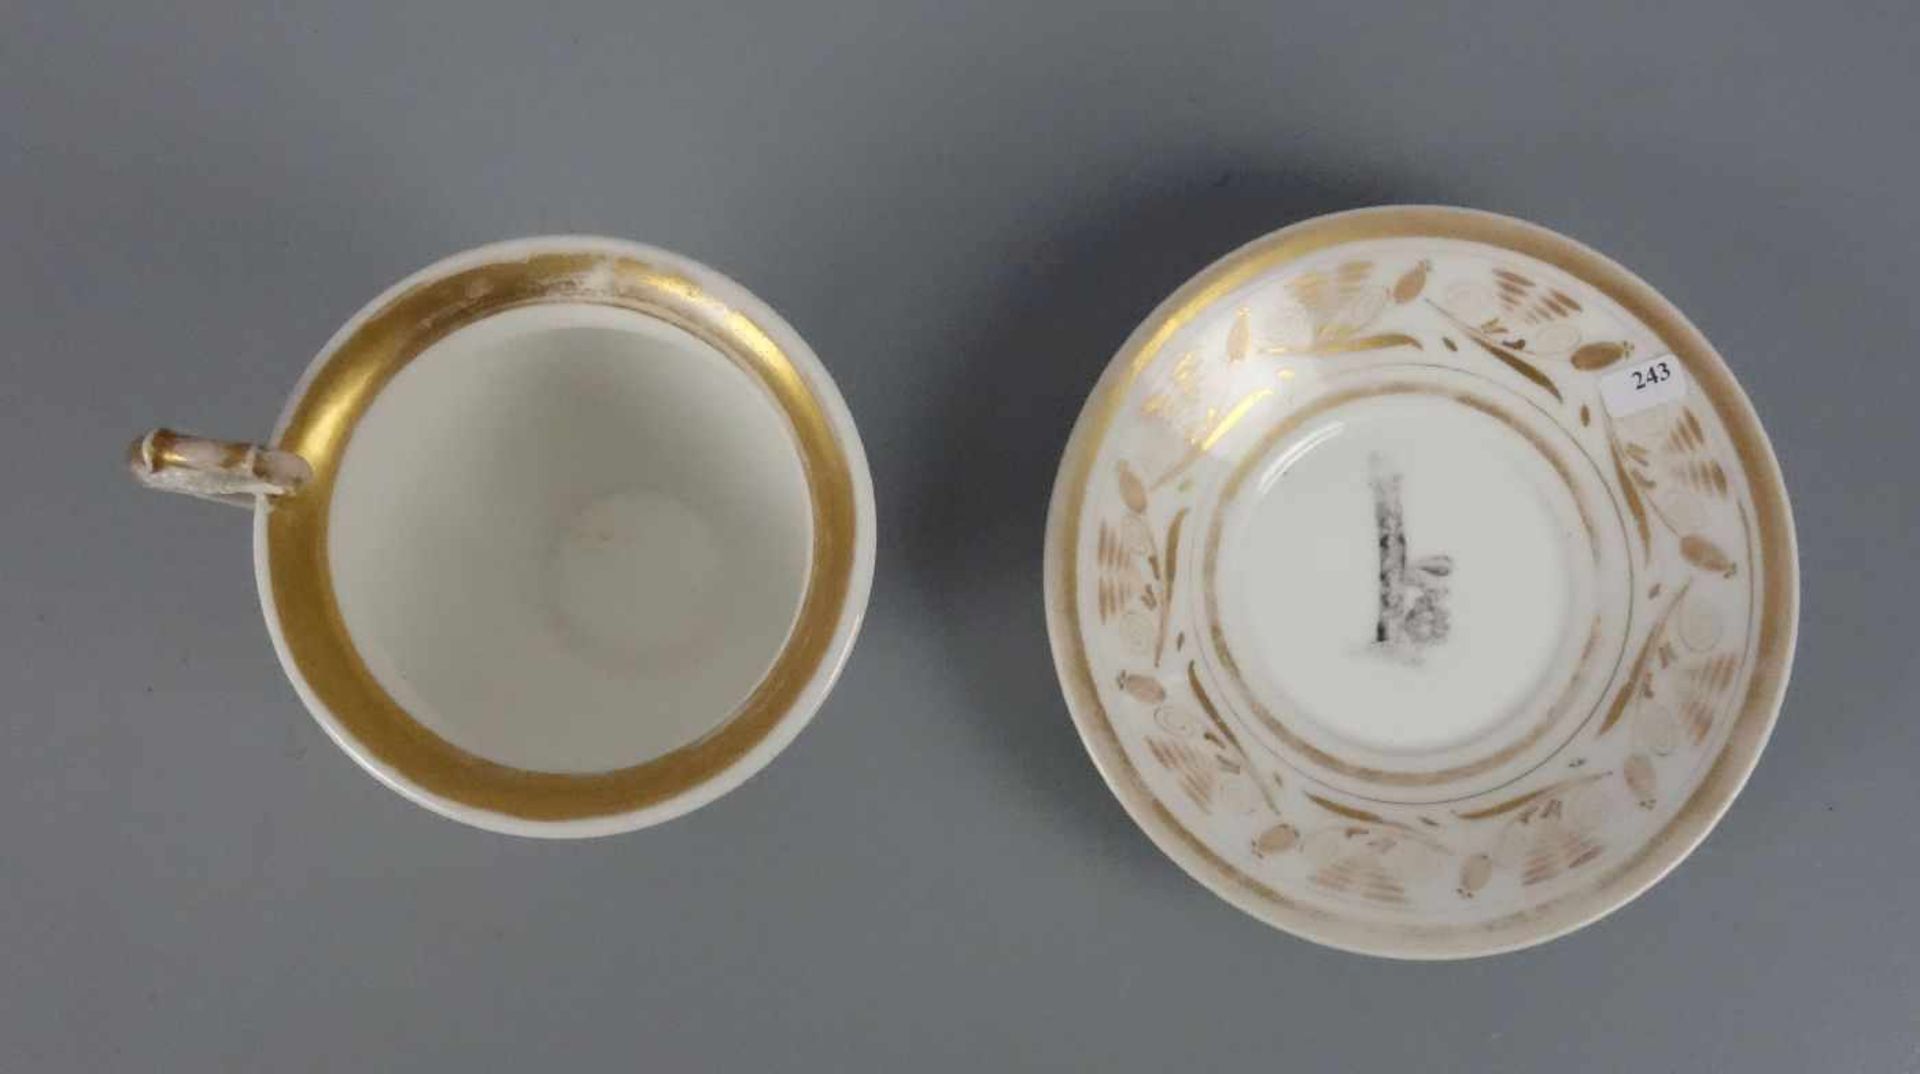 GROSSE EMPIRE-TASSE / empire cup, um 1800, Porzellan, ungemarkt, polychrom und gold staffiert. Tasse - Image 3 of 5